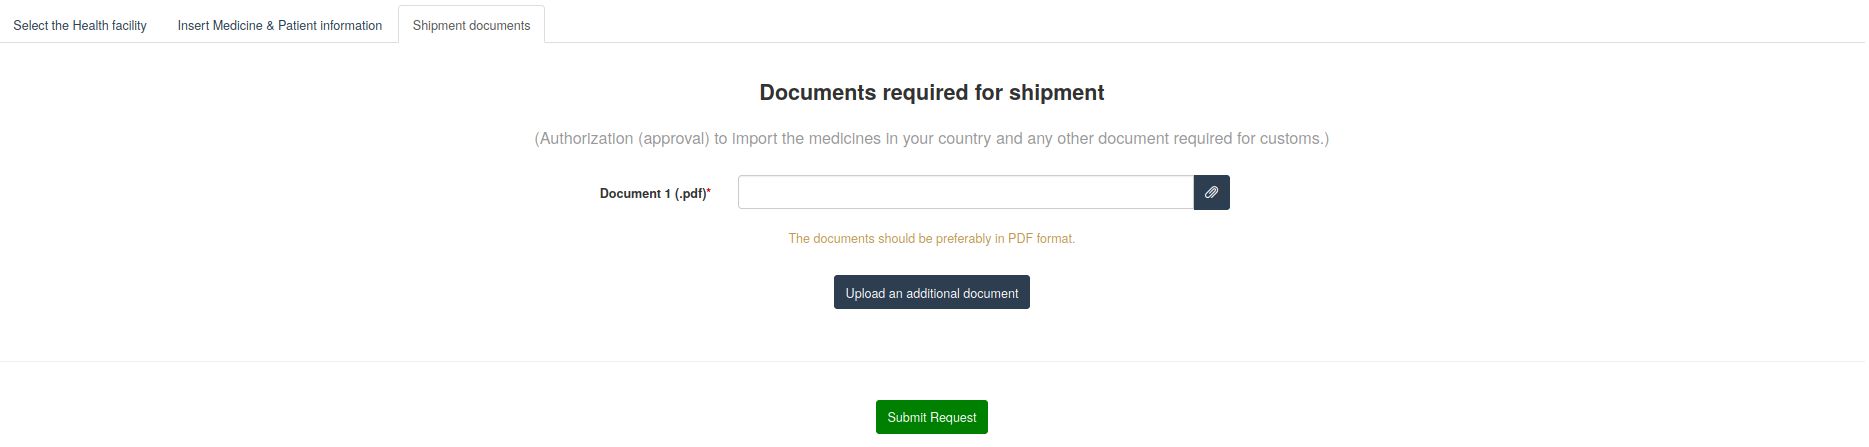 Req shipment-documents.png